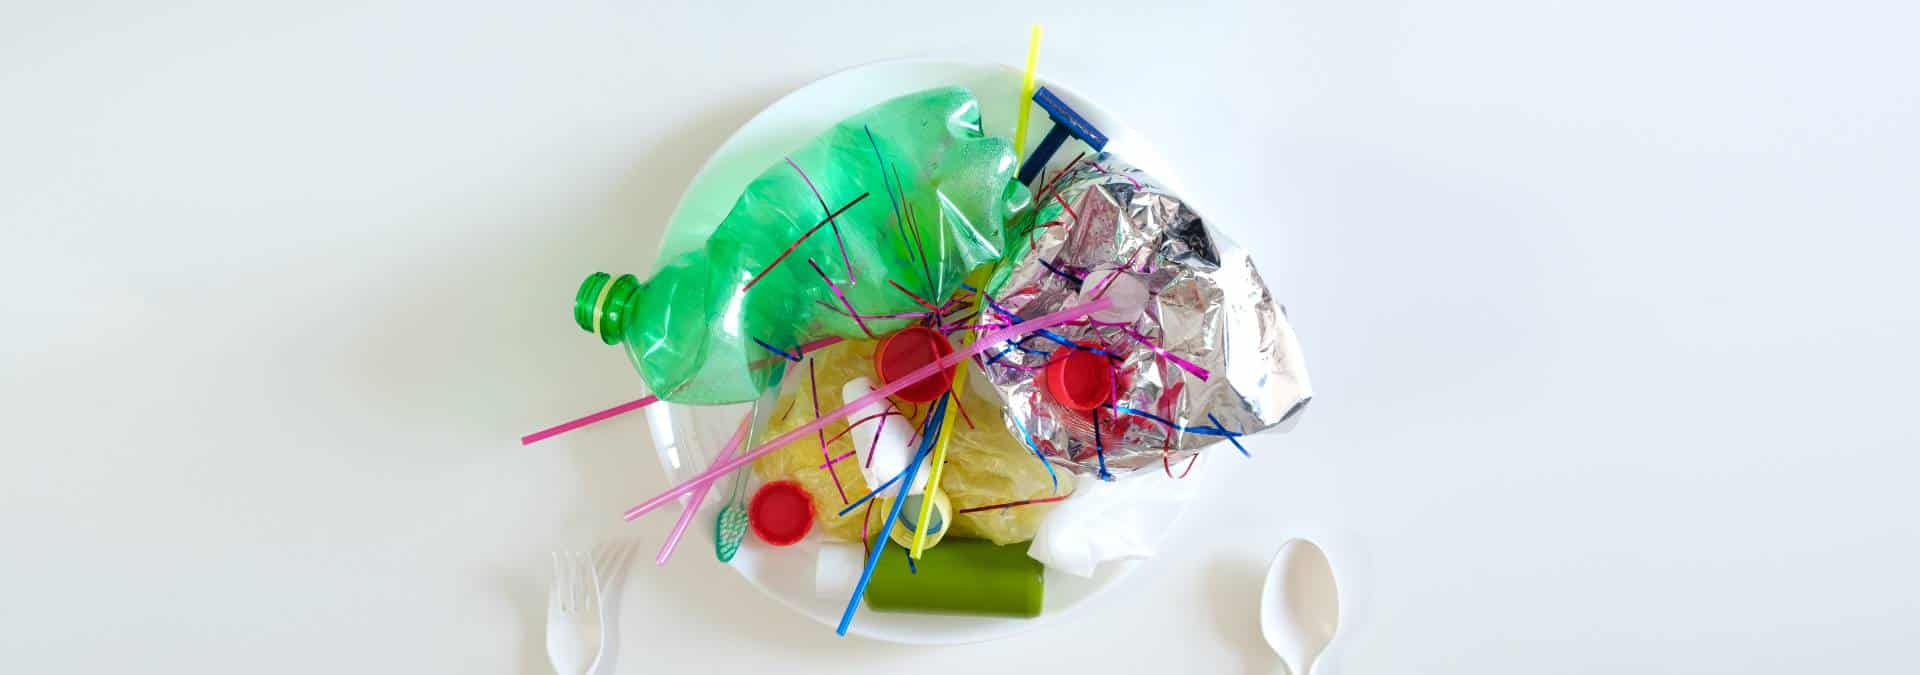 10 maneiras de reduzir o consumo de plástico no dia a dia